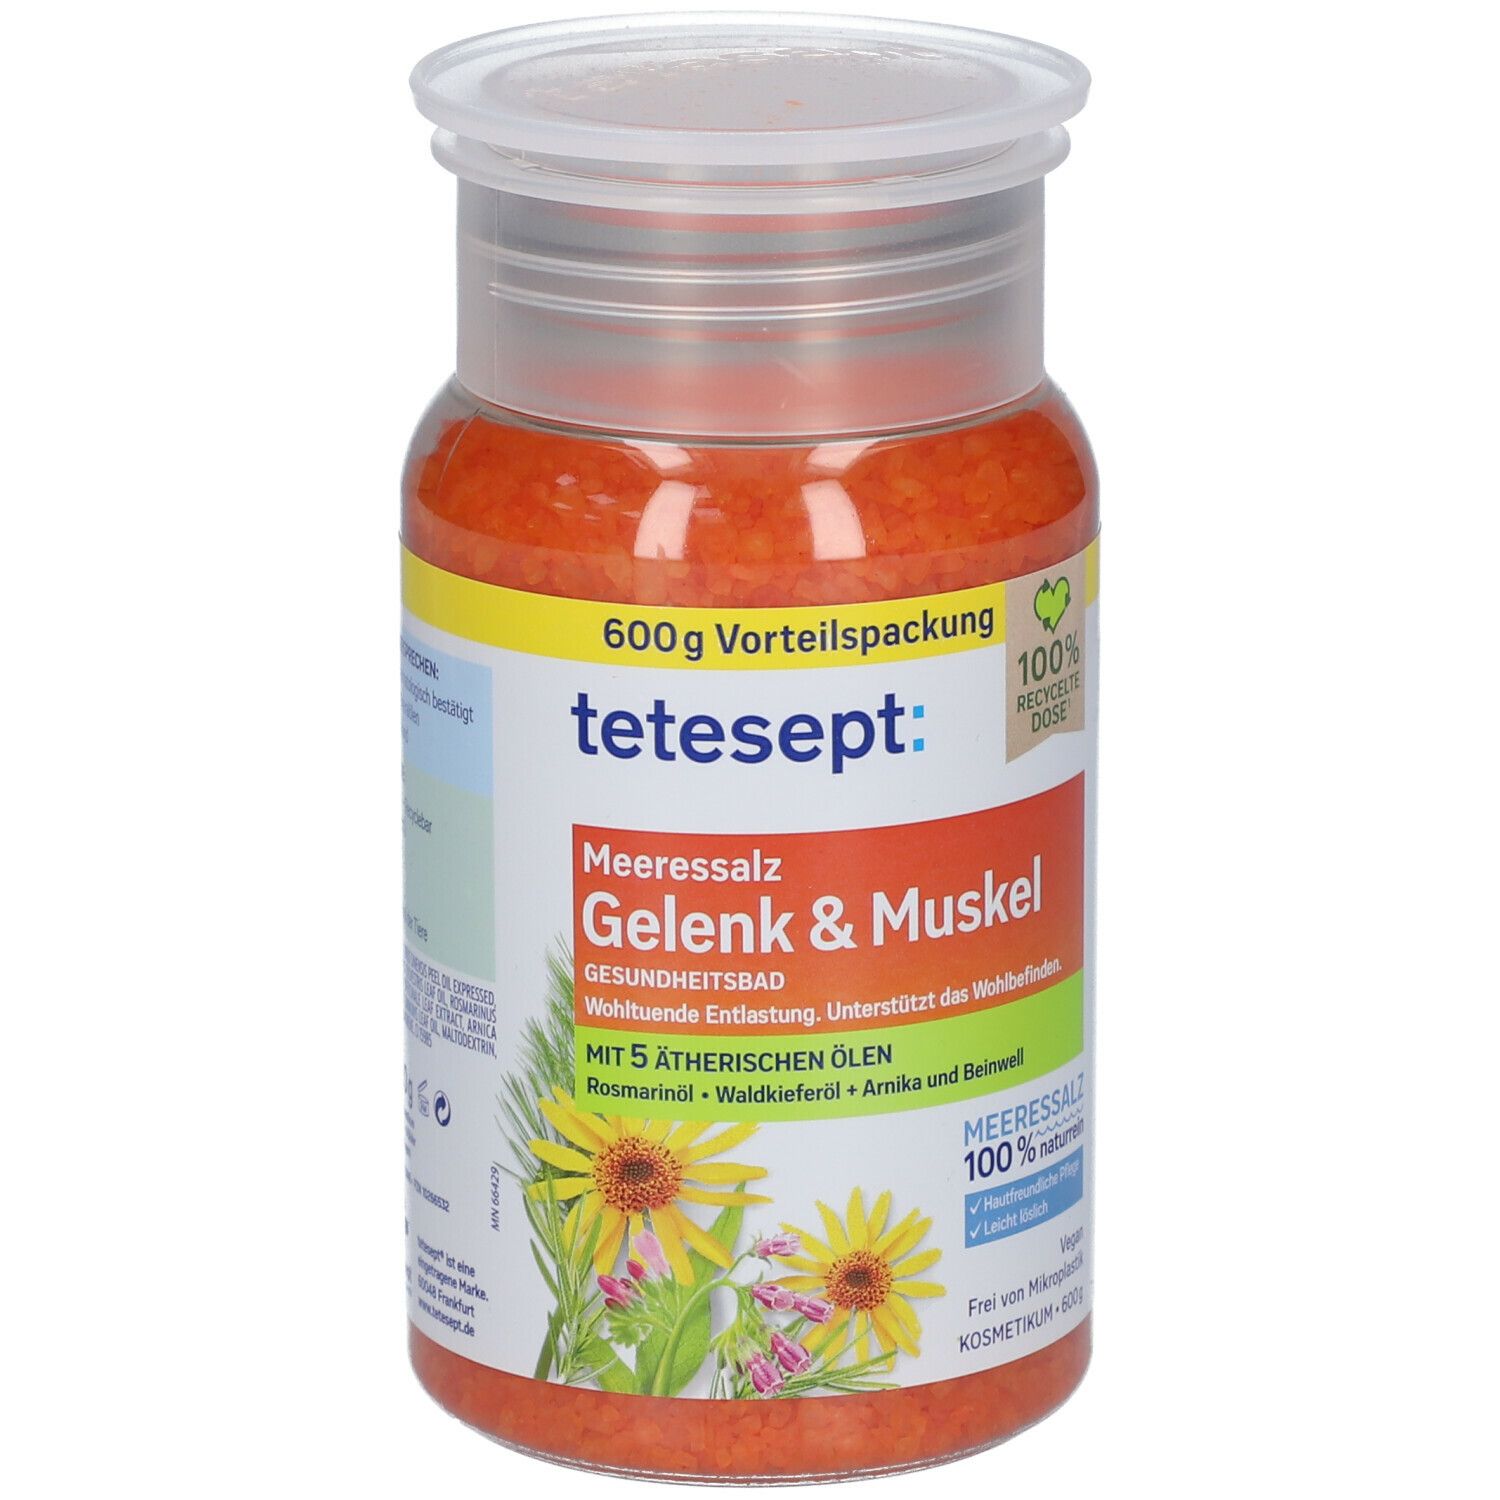 tetesept® Meeressalz Gelenk & Muskel Gesundheitsbad